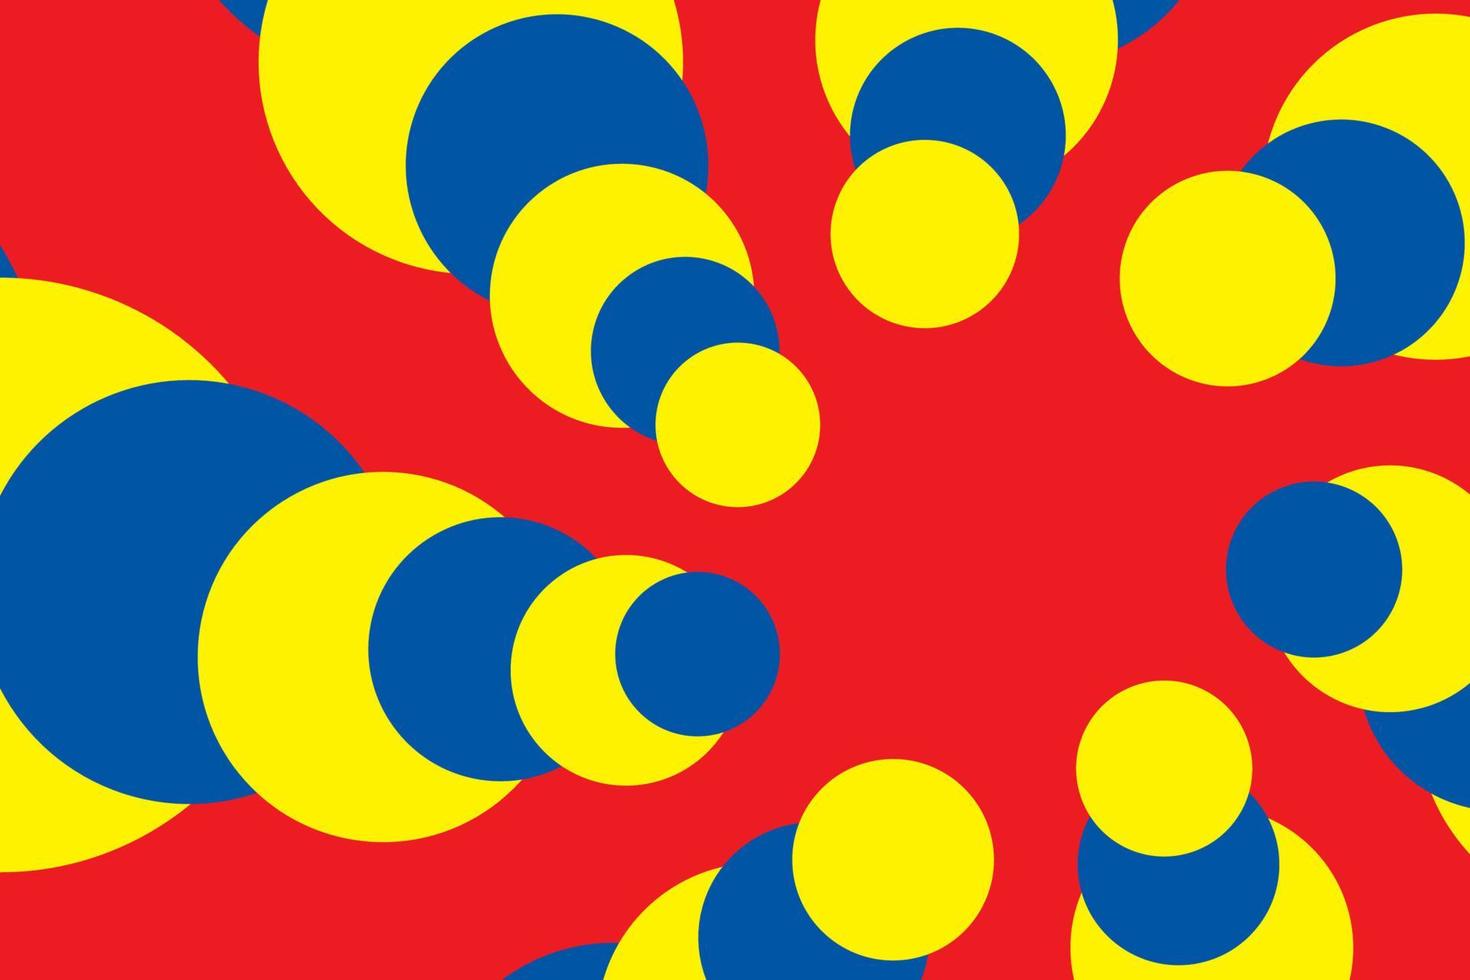 Fondo de colores primarios, azul, rojo y amarillo, forma de círculo geométrico. ilustración vectorial. vector